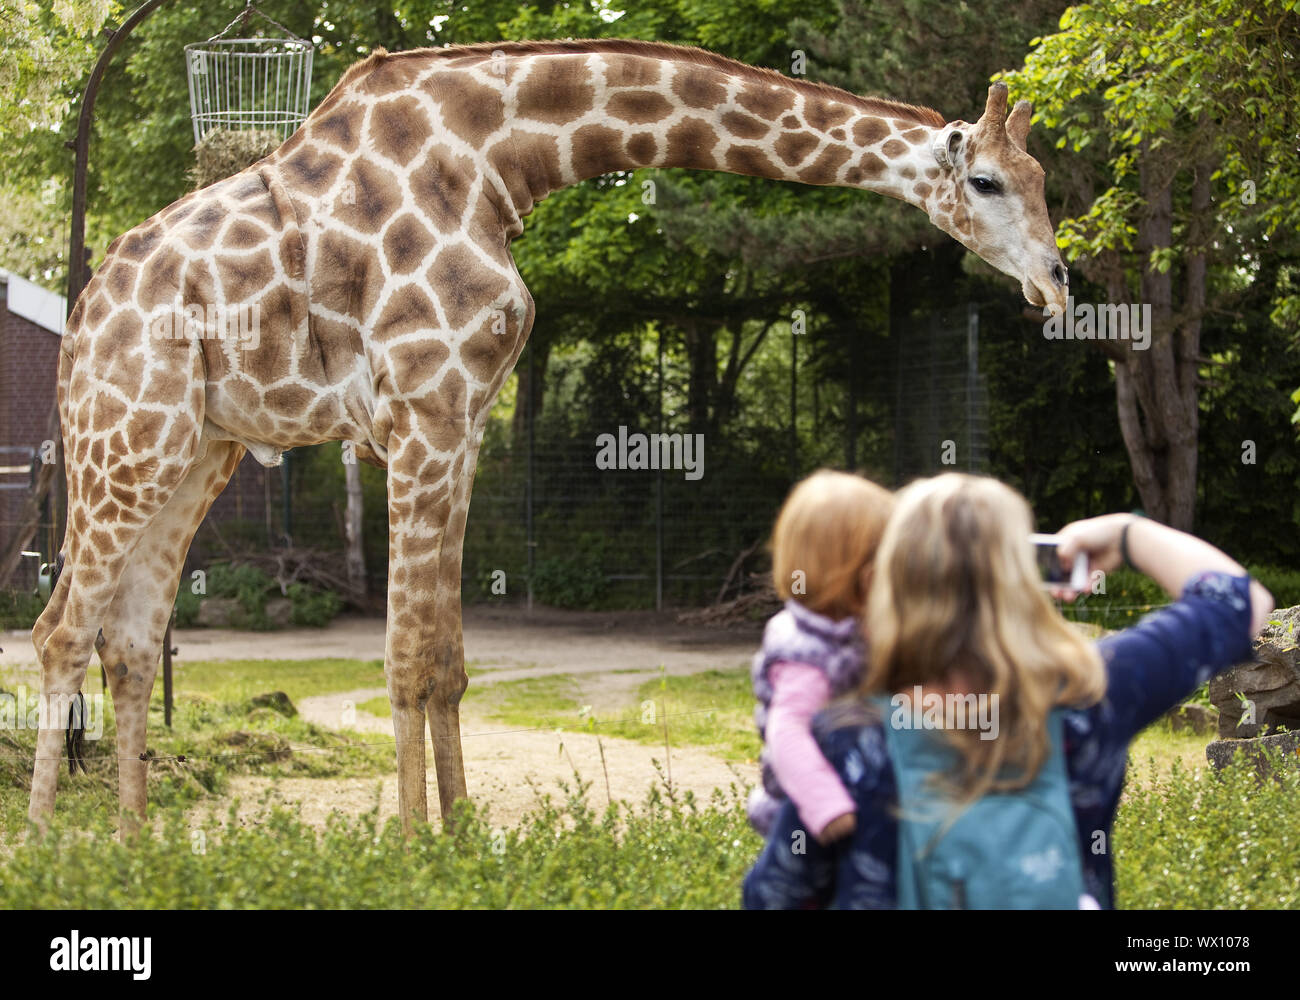 Giraffa angolani (giraffa) madre con la figlia tenendo fotos della giraffa in uno zoo, Dortmund Europa Foto Stock